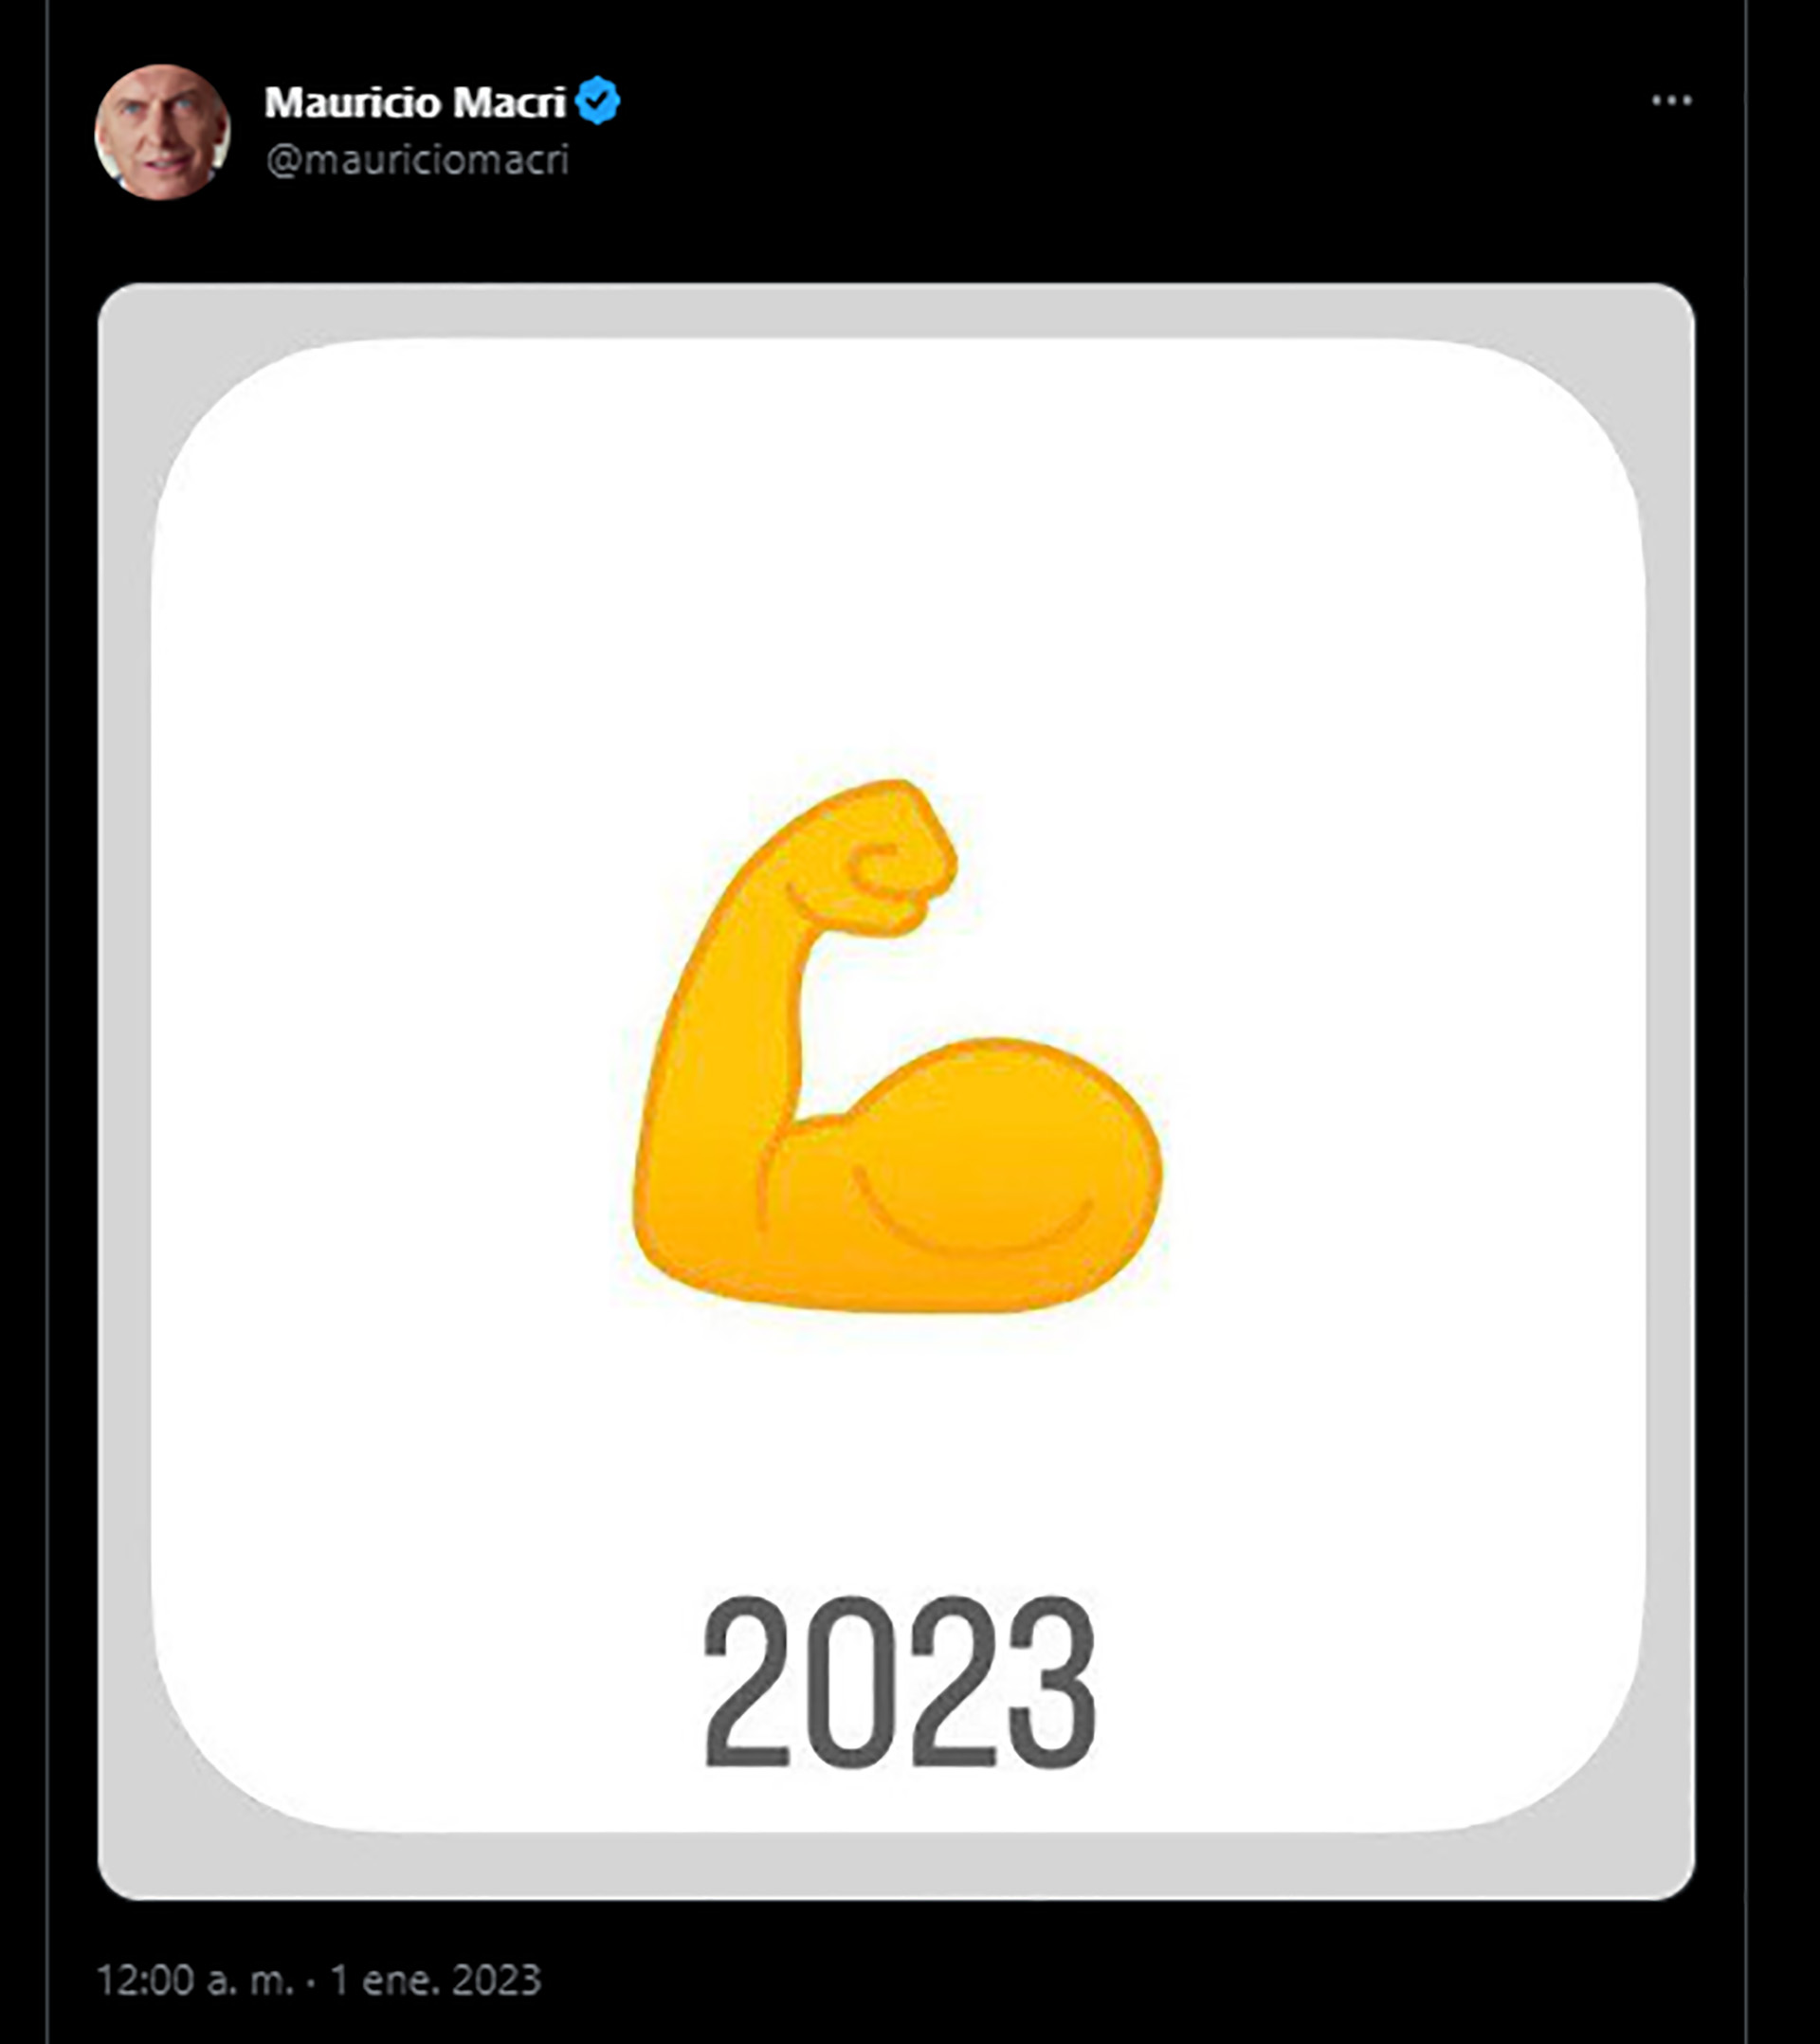 El emoji que publicó Mauricio Macri 